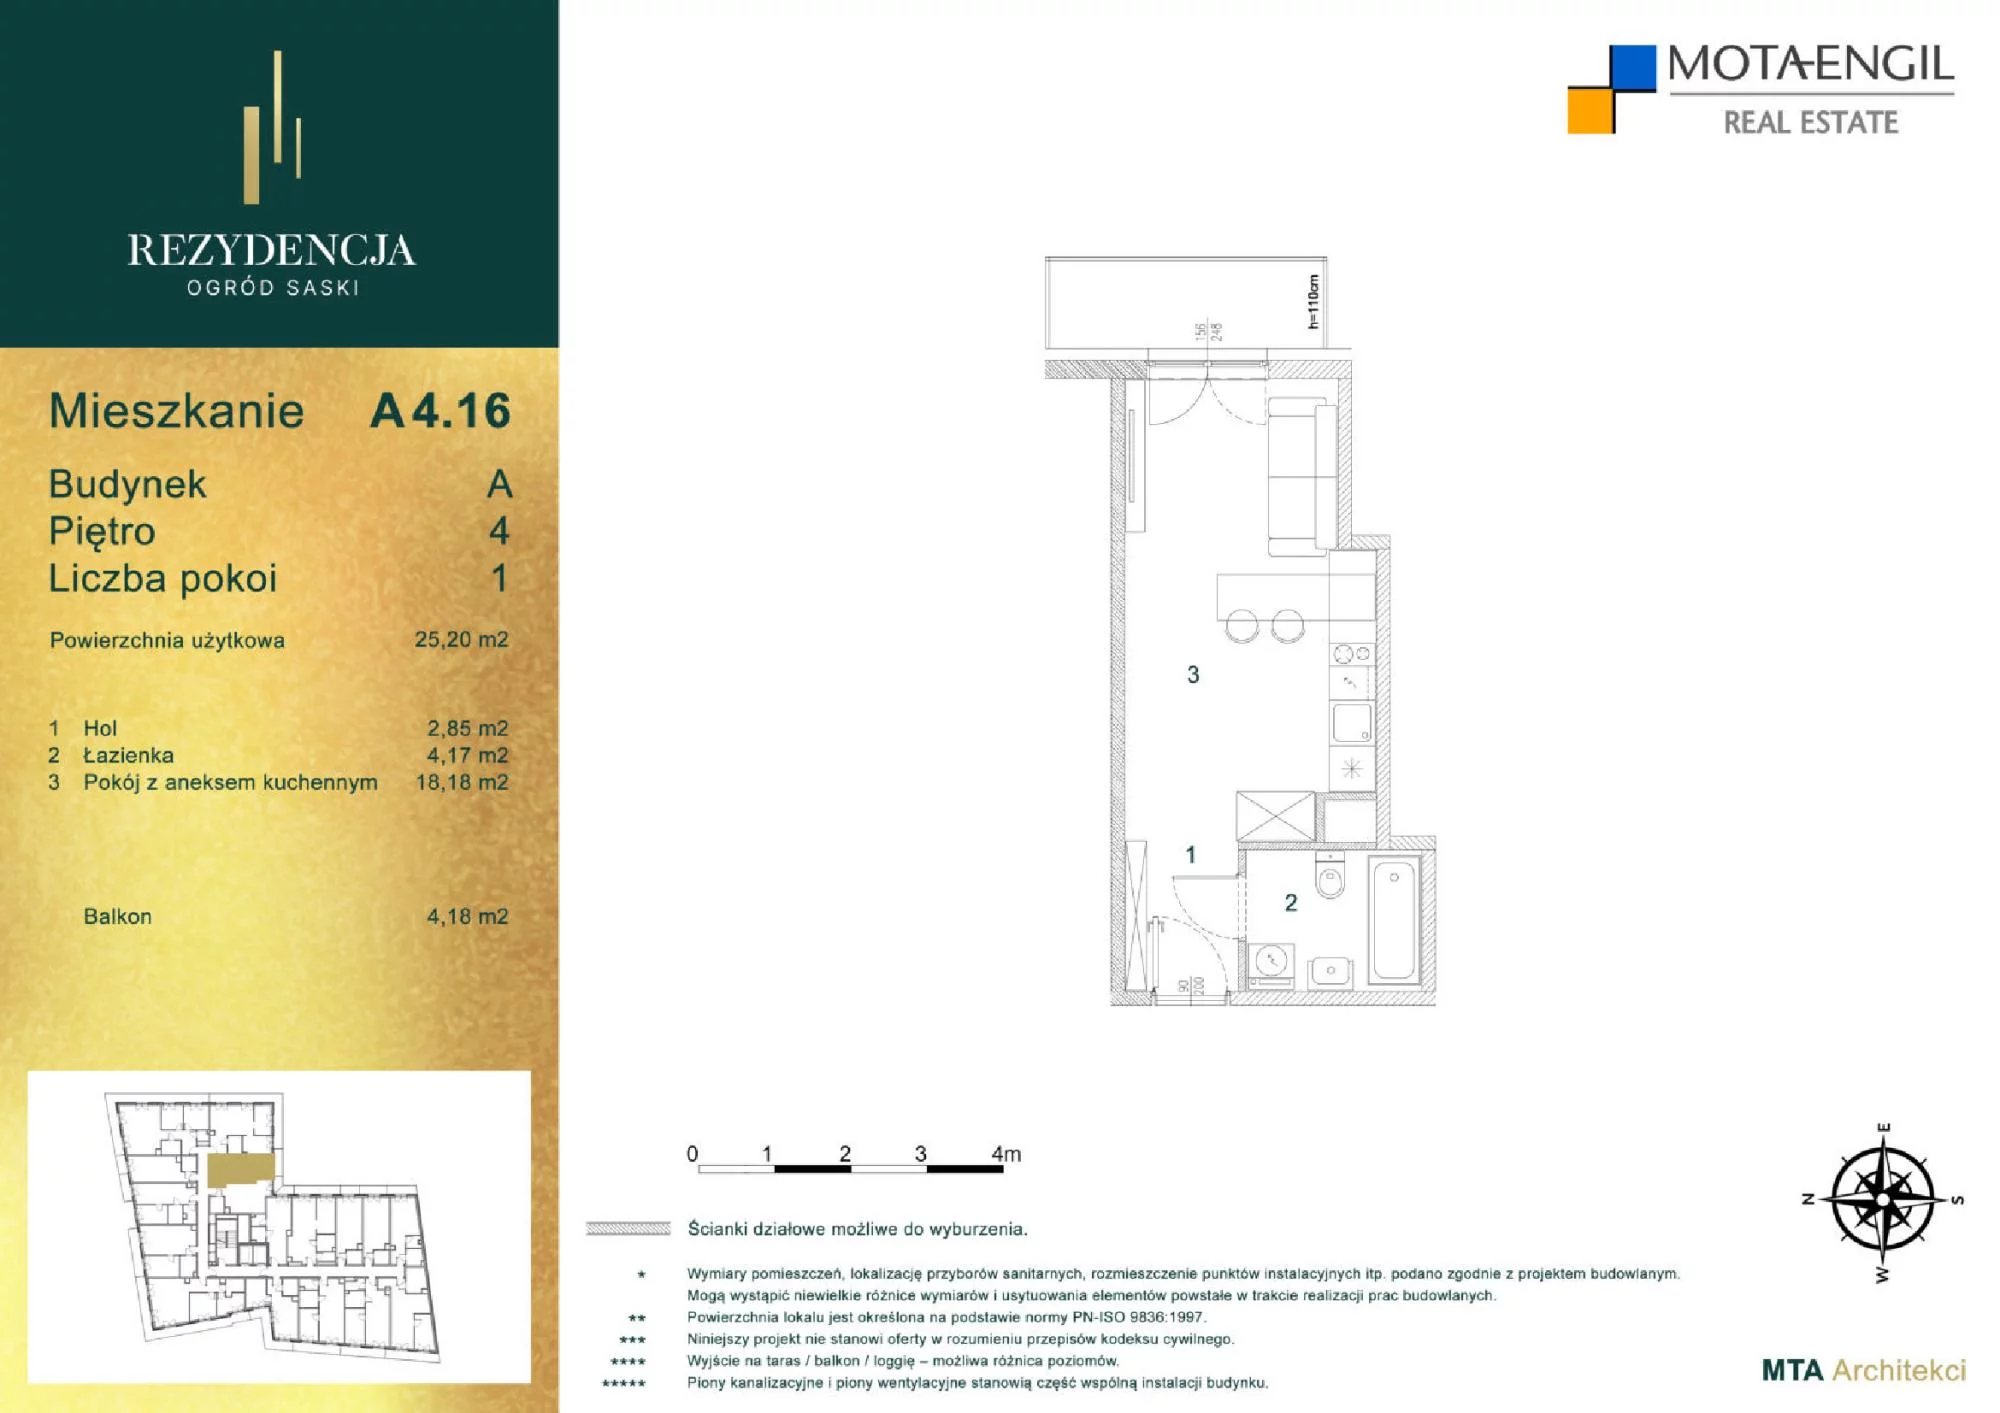 Mieszkanie 25,20 m², piętro 4, oferta nr A4.16, Rezydencja Ogród Saski, Lublin, Wieniawa, ul. Jasna 7, 7A